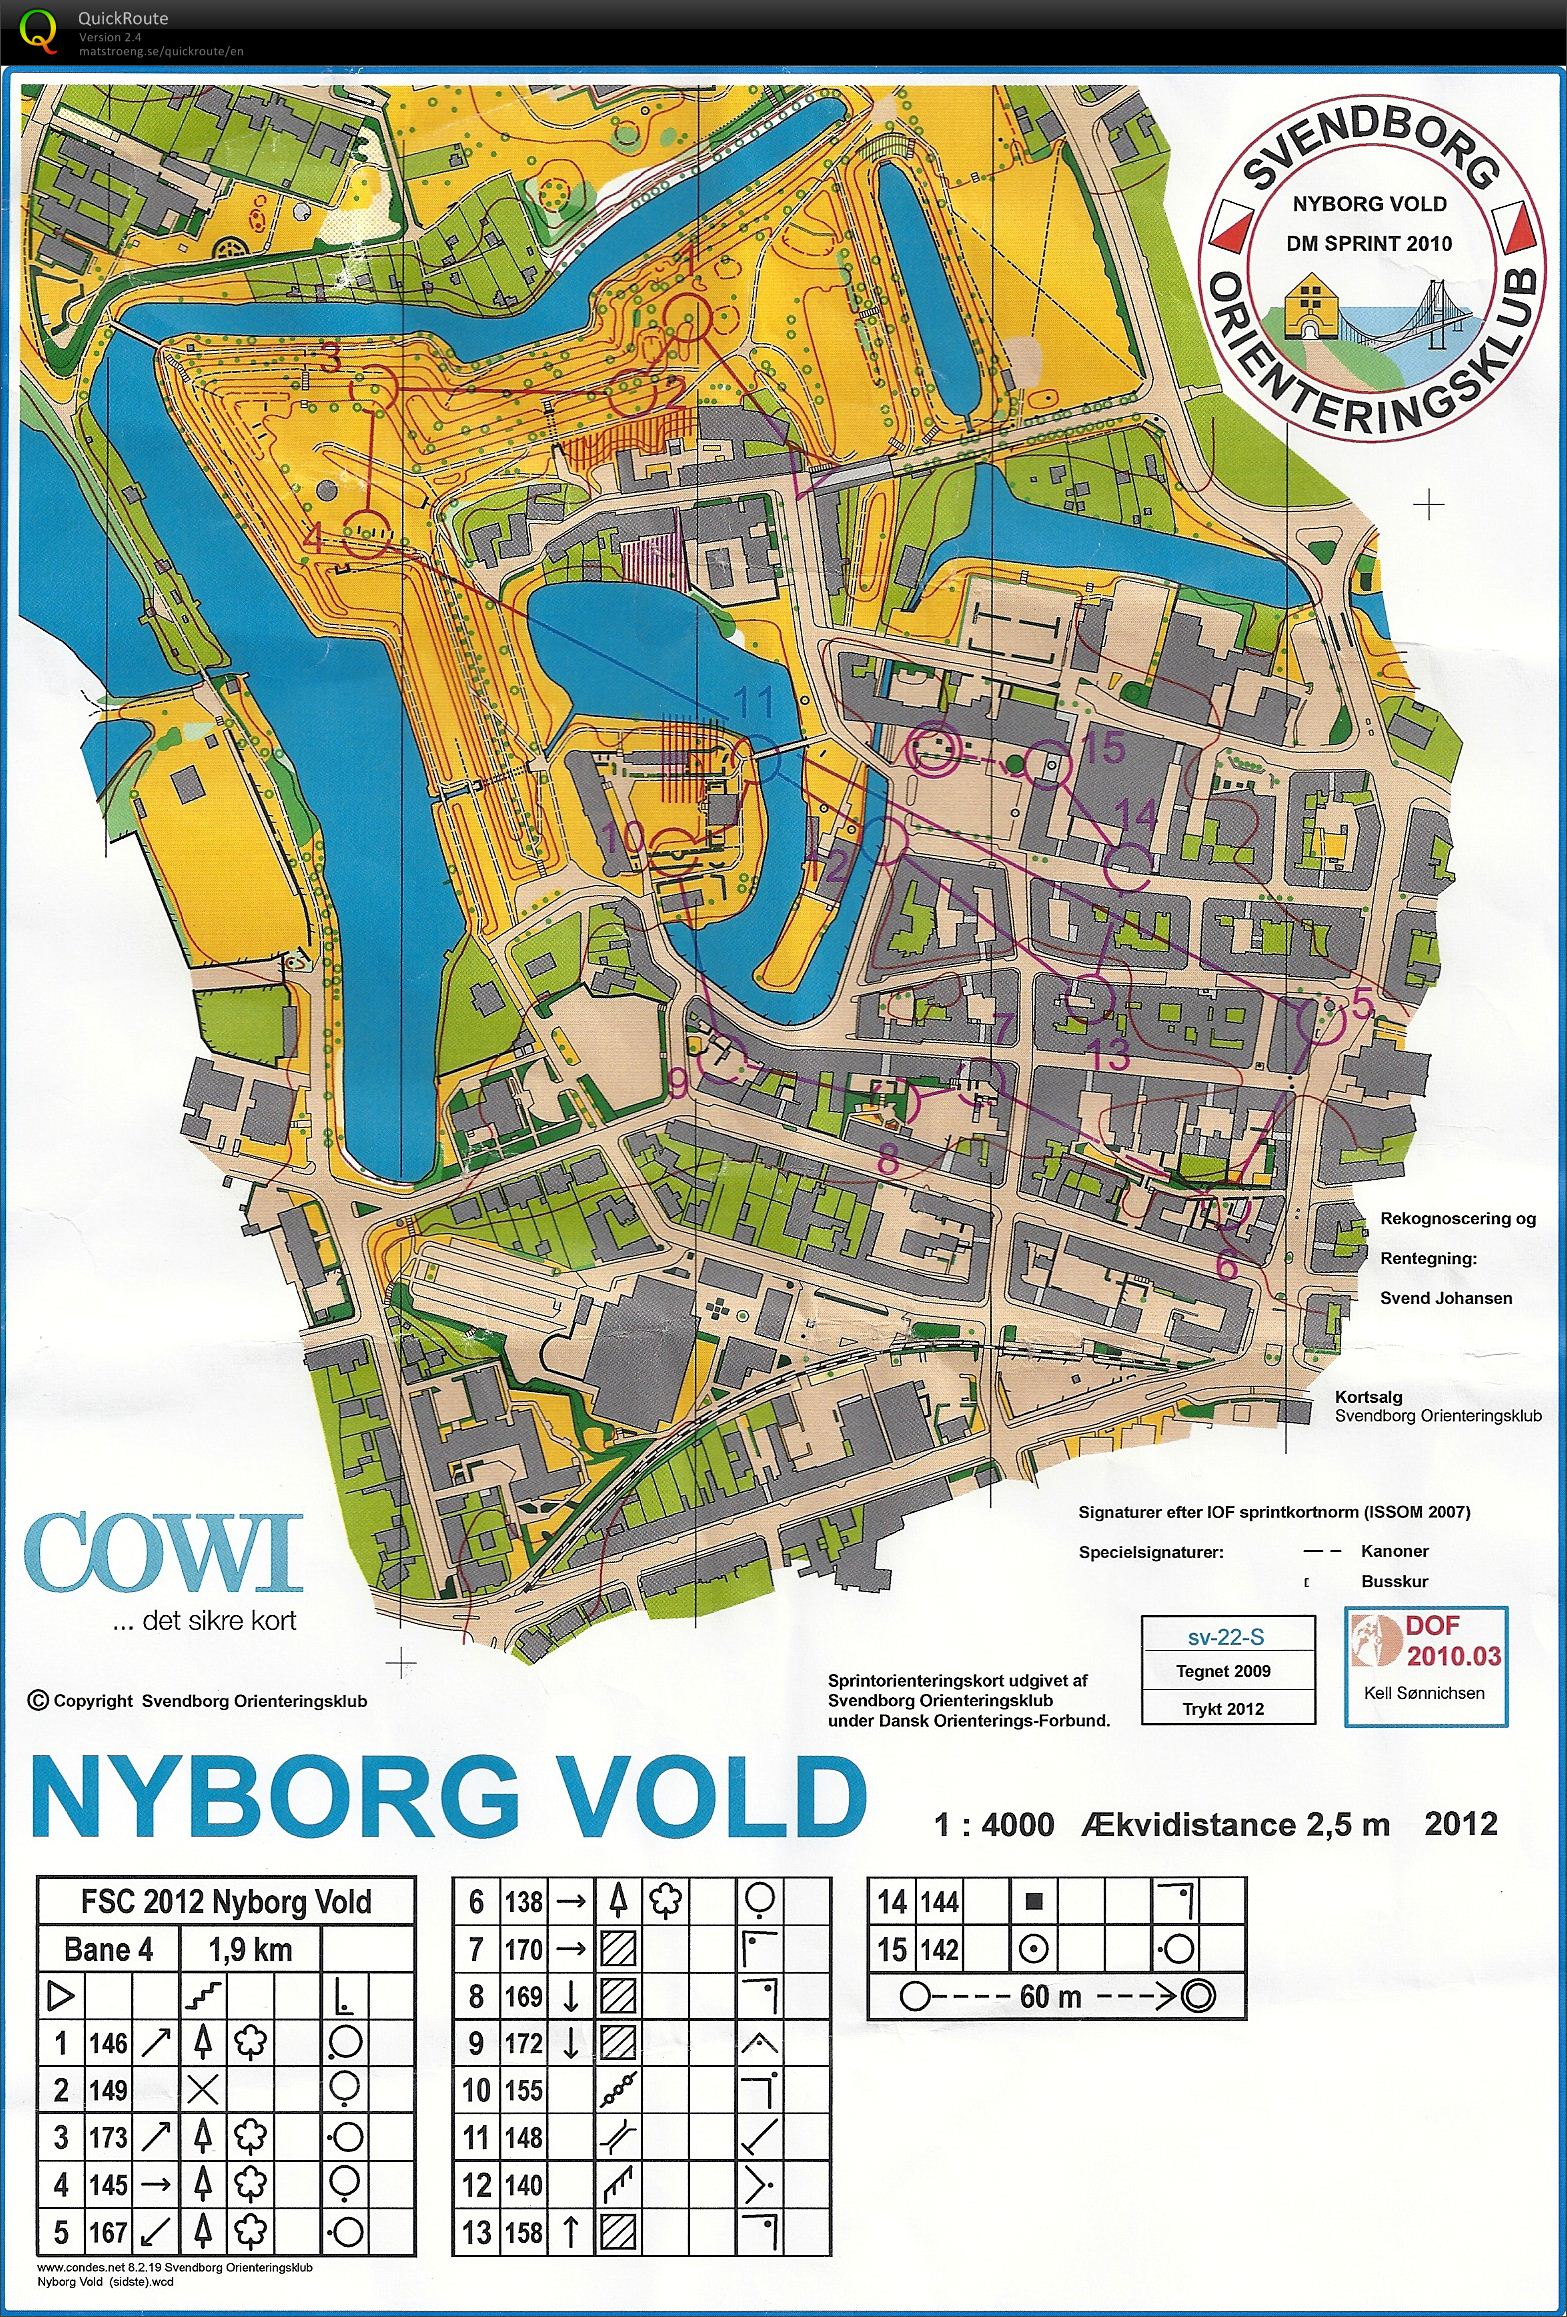 Nyborg Vold, Bane 4, D45, Lene S.N. (28.05.2012)